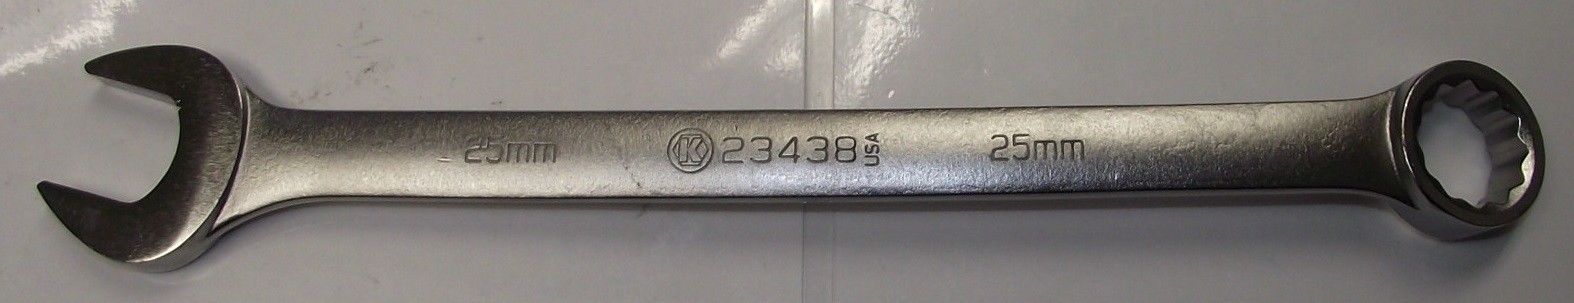 Kobalt 23438 25mm Combo Wrench 12pt. USA